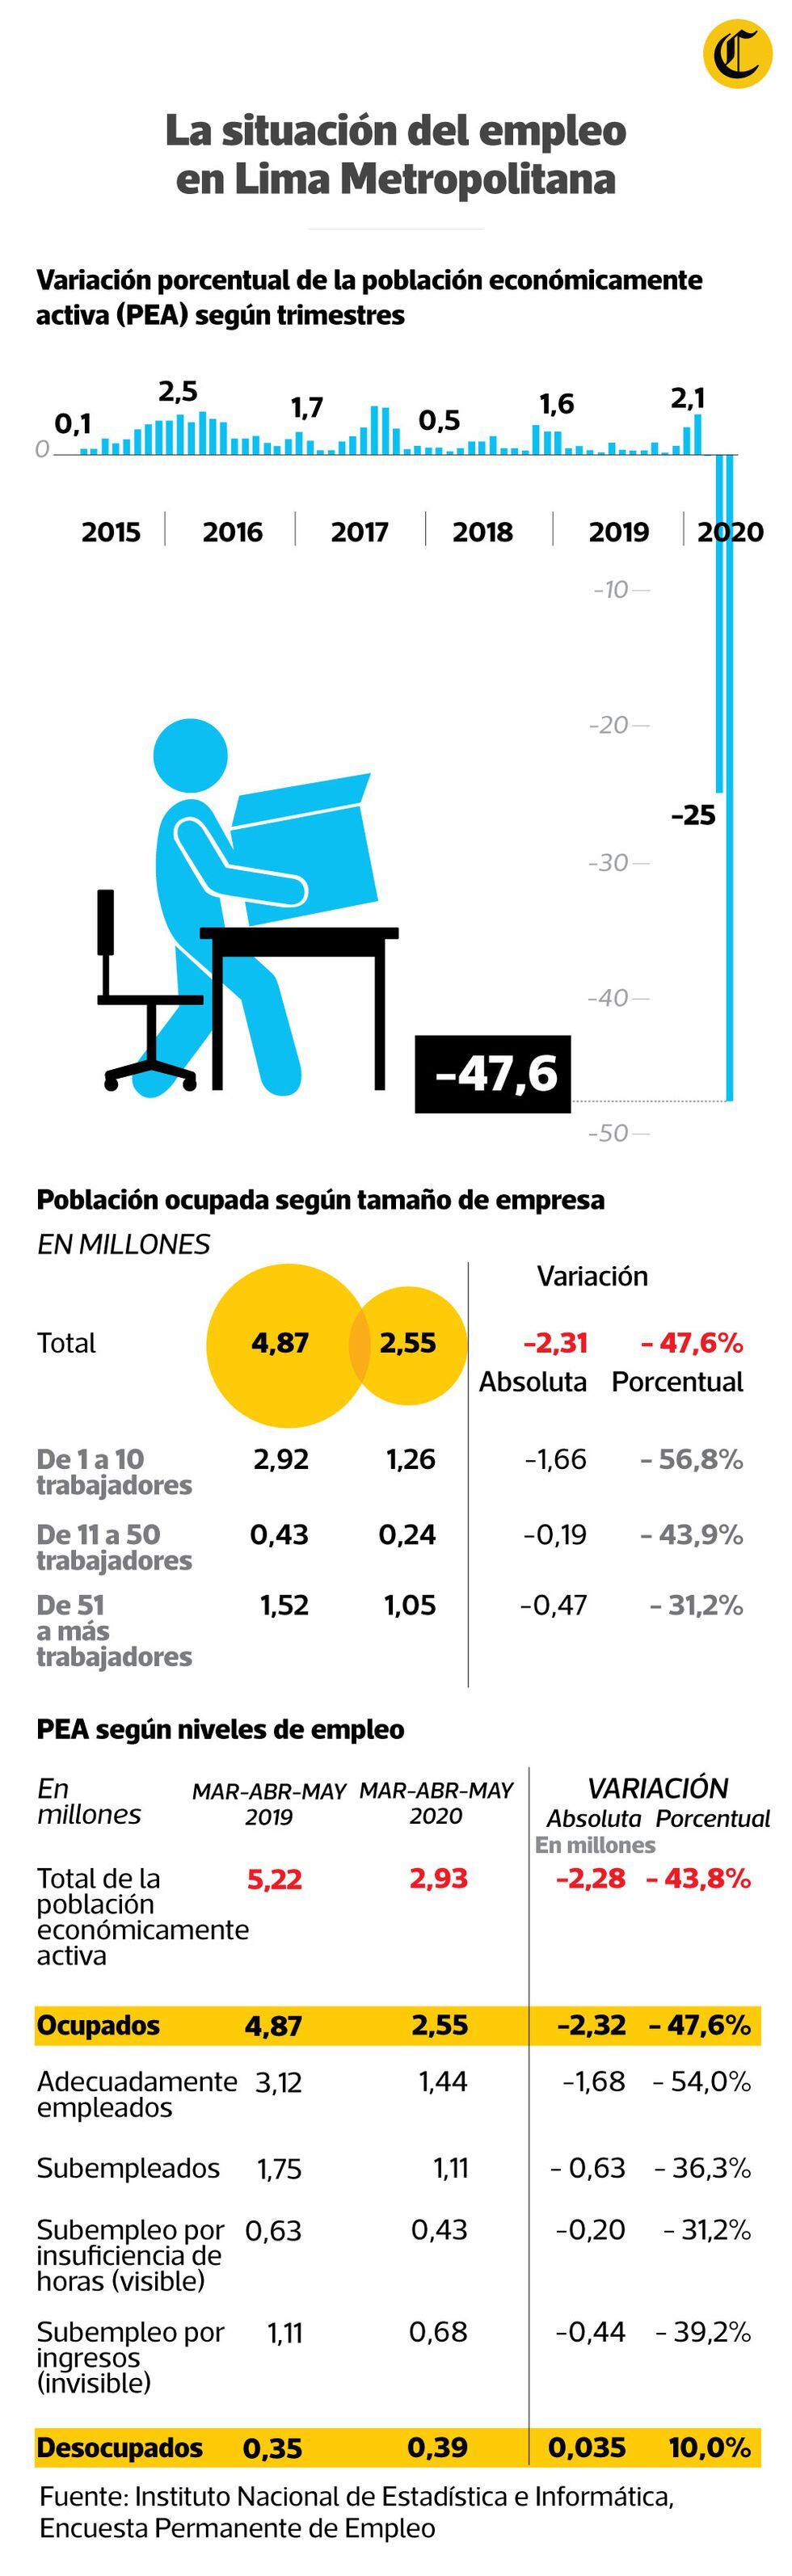 La situación laboral en Lima Metropolitana. (Infografía: El Comercio)